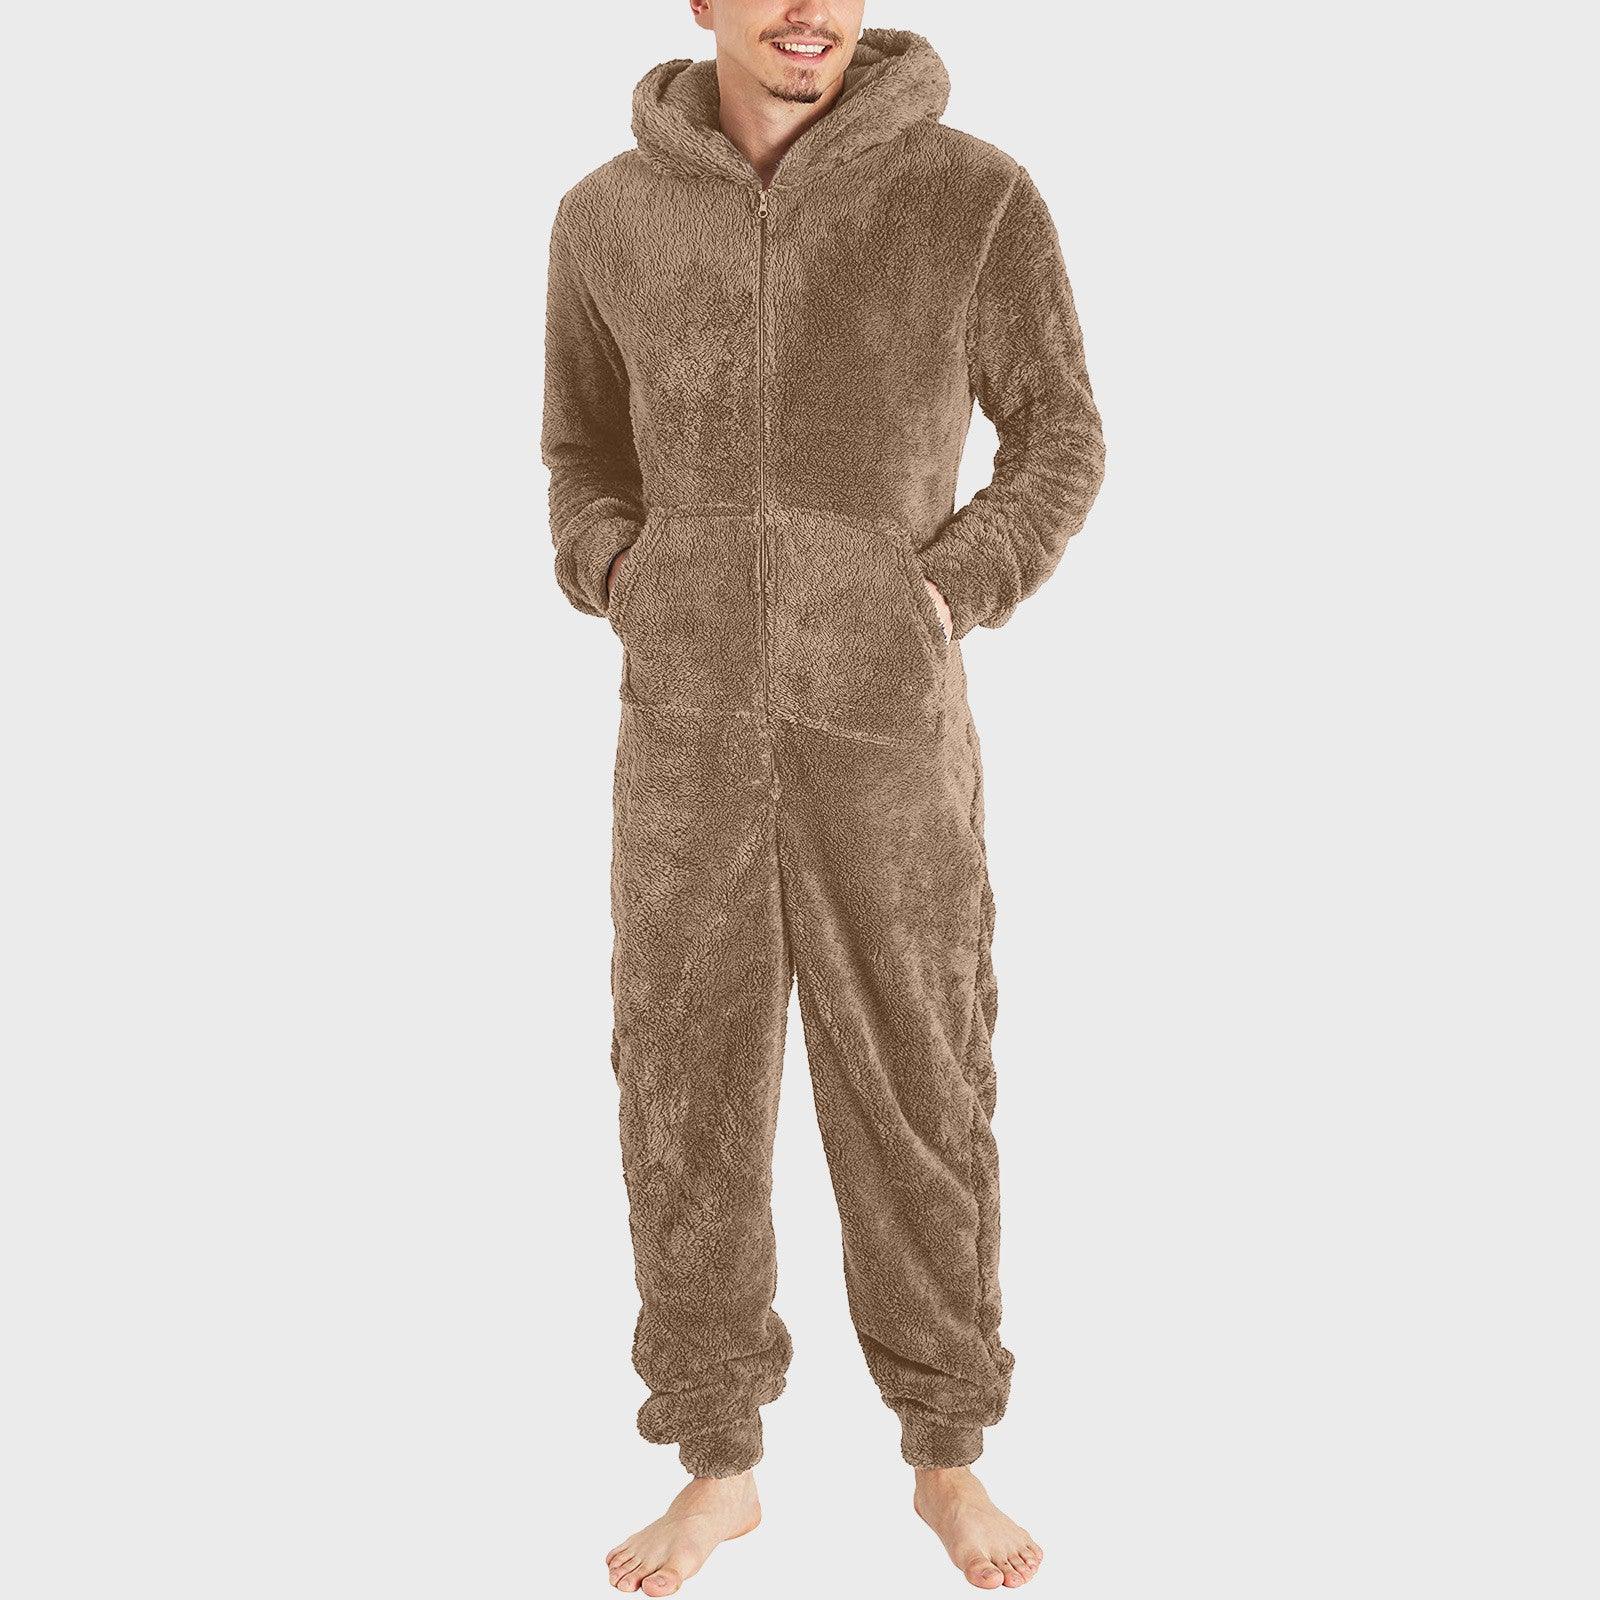 Men's Zipper Plush Jumpsuit Thermal Pajamas Winter clothes for men